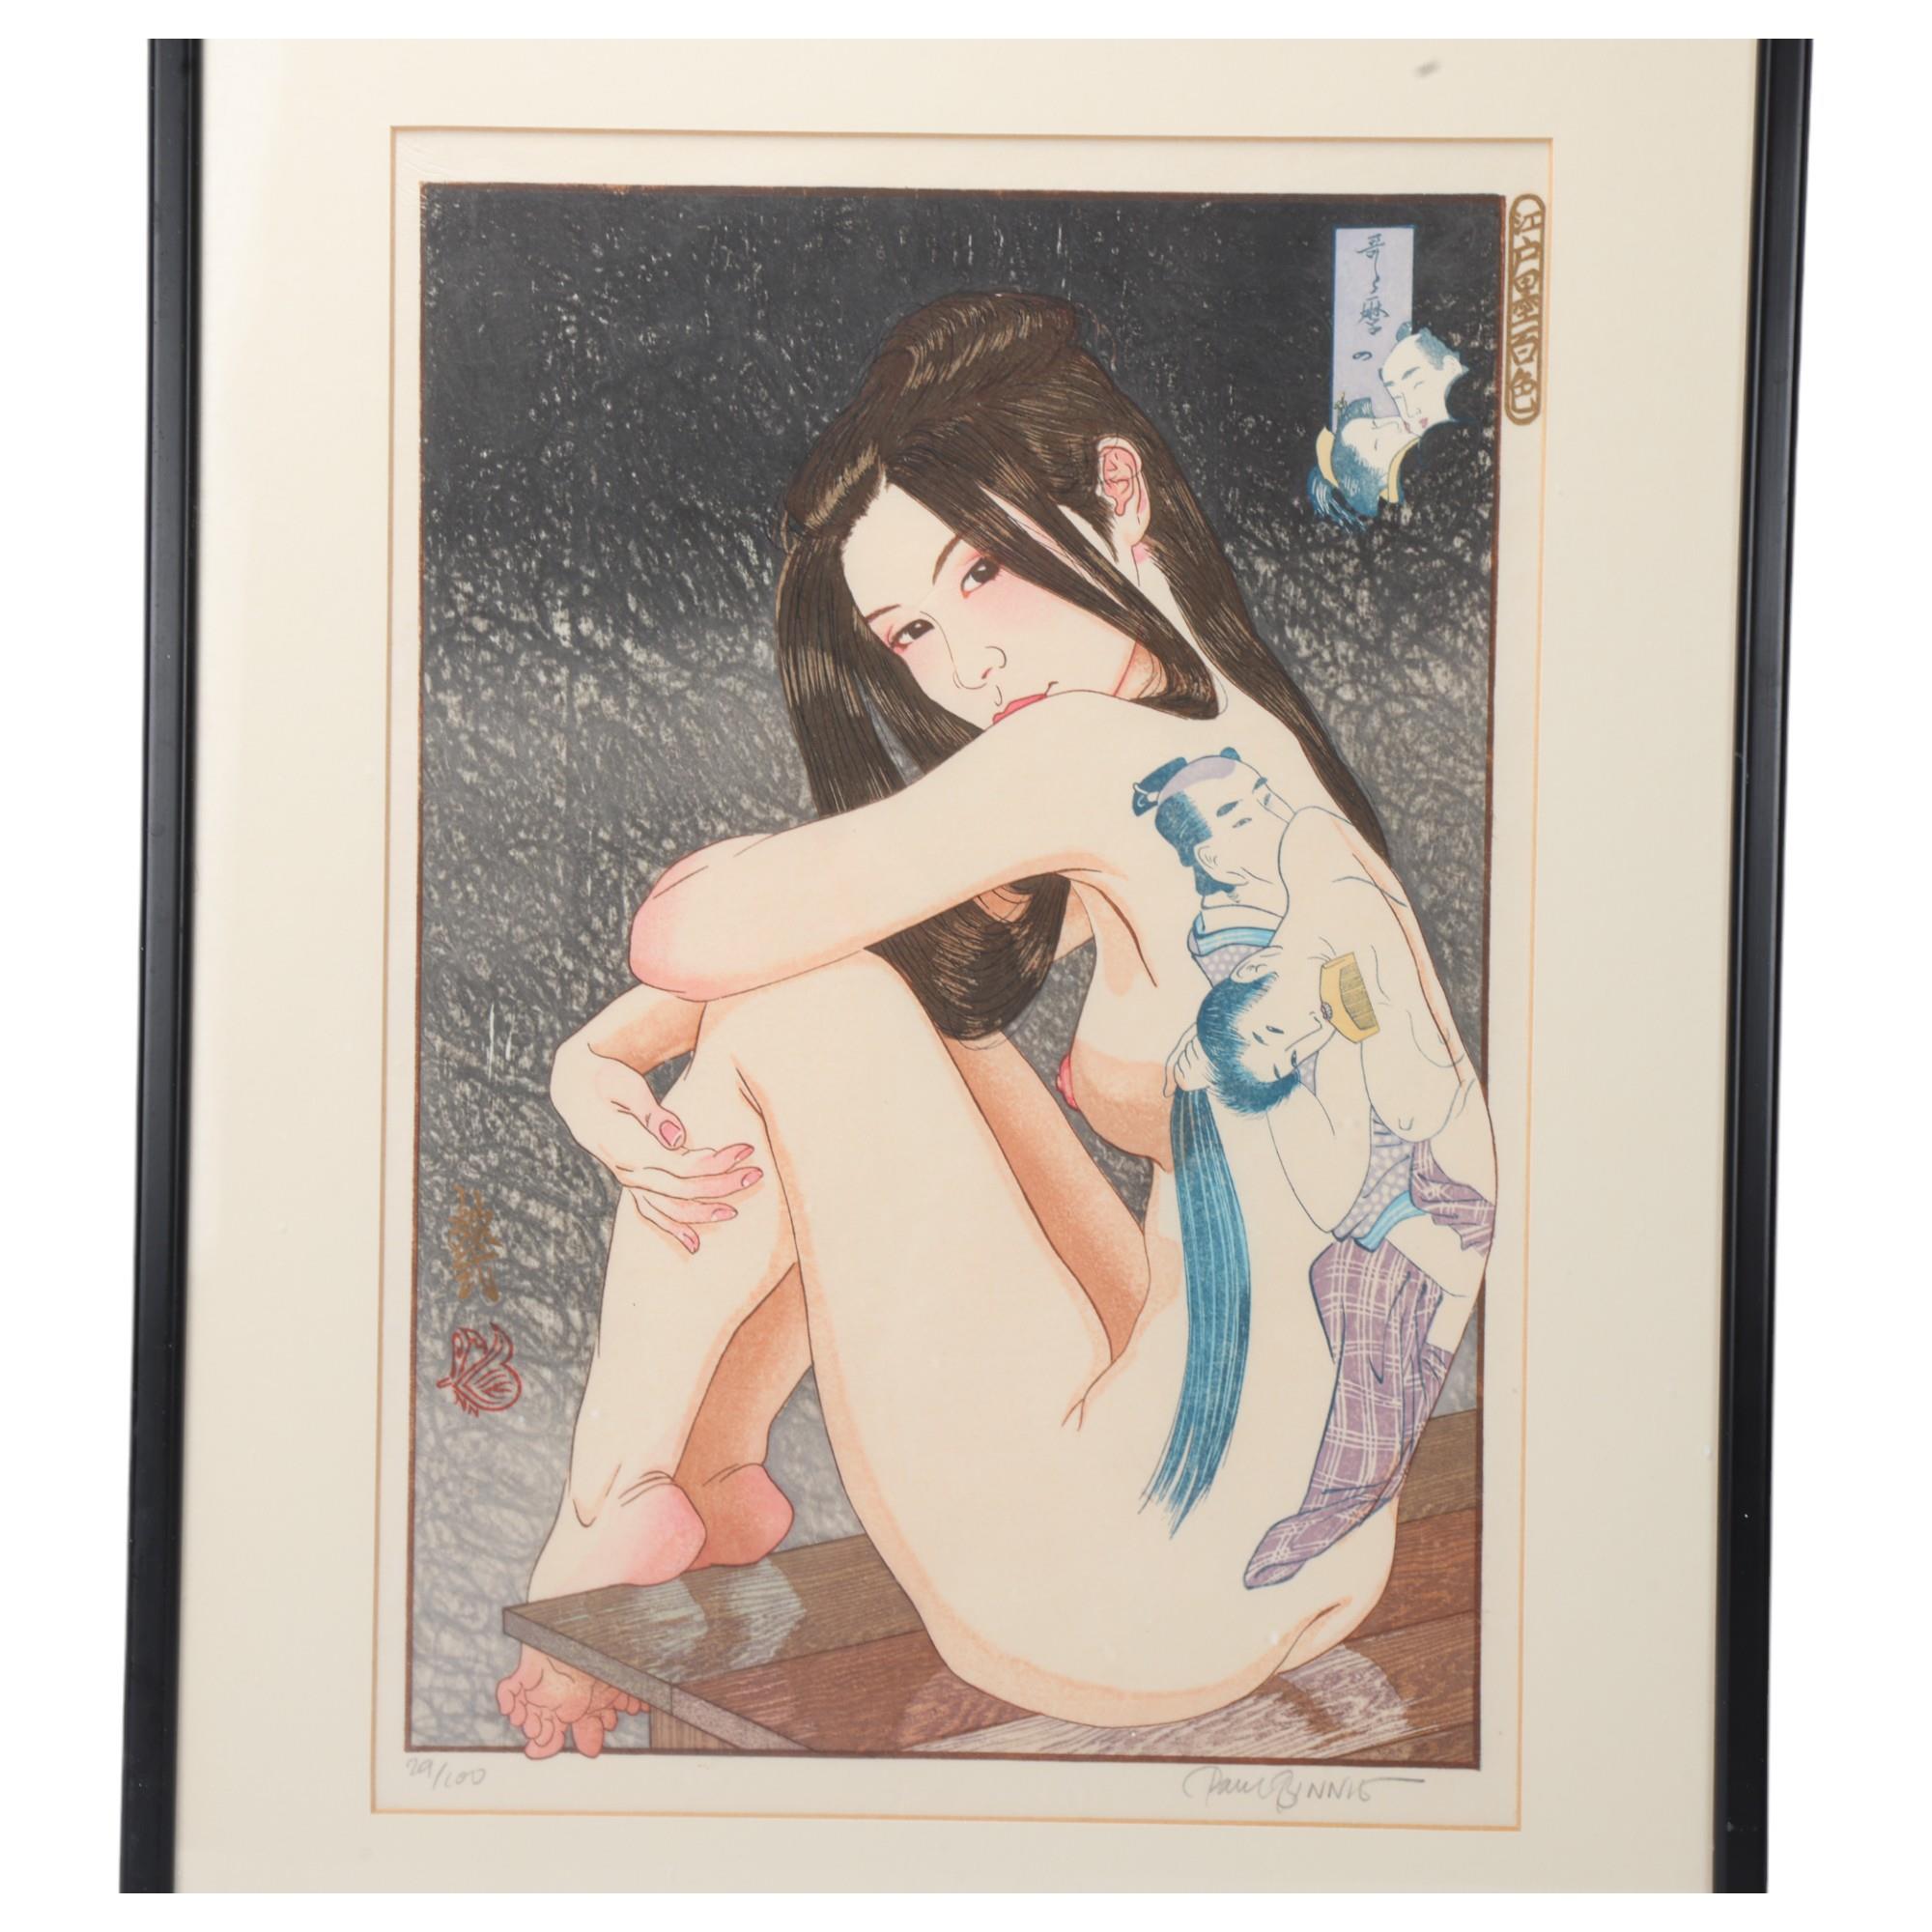 Paul Binnie (born 1967), Utamarono Shunga - Erotica by Utamaro, hand colour woodblock print from